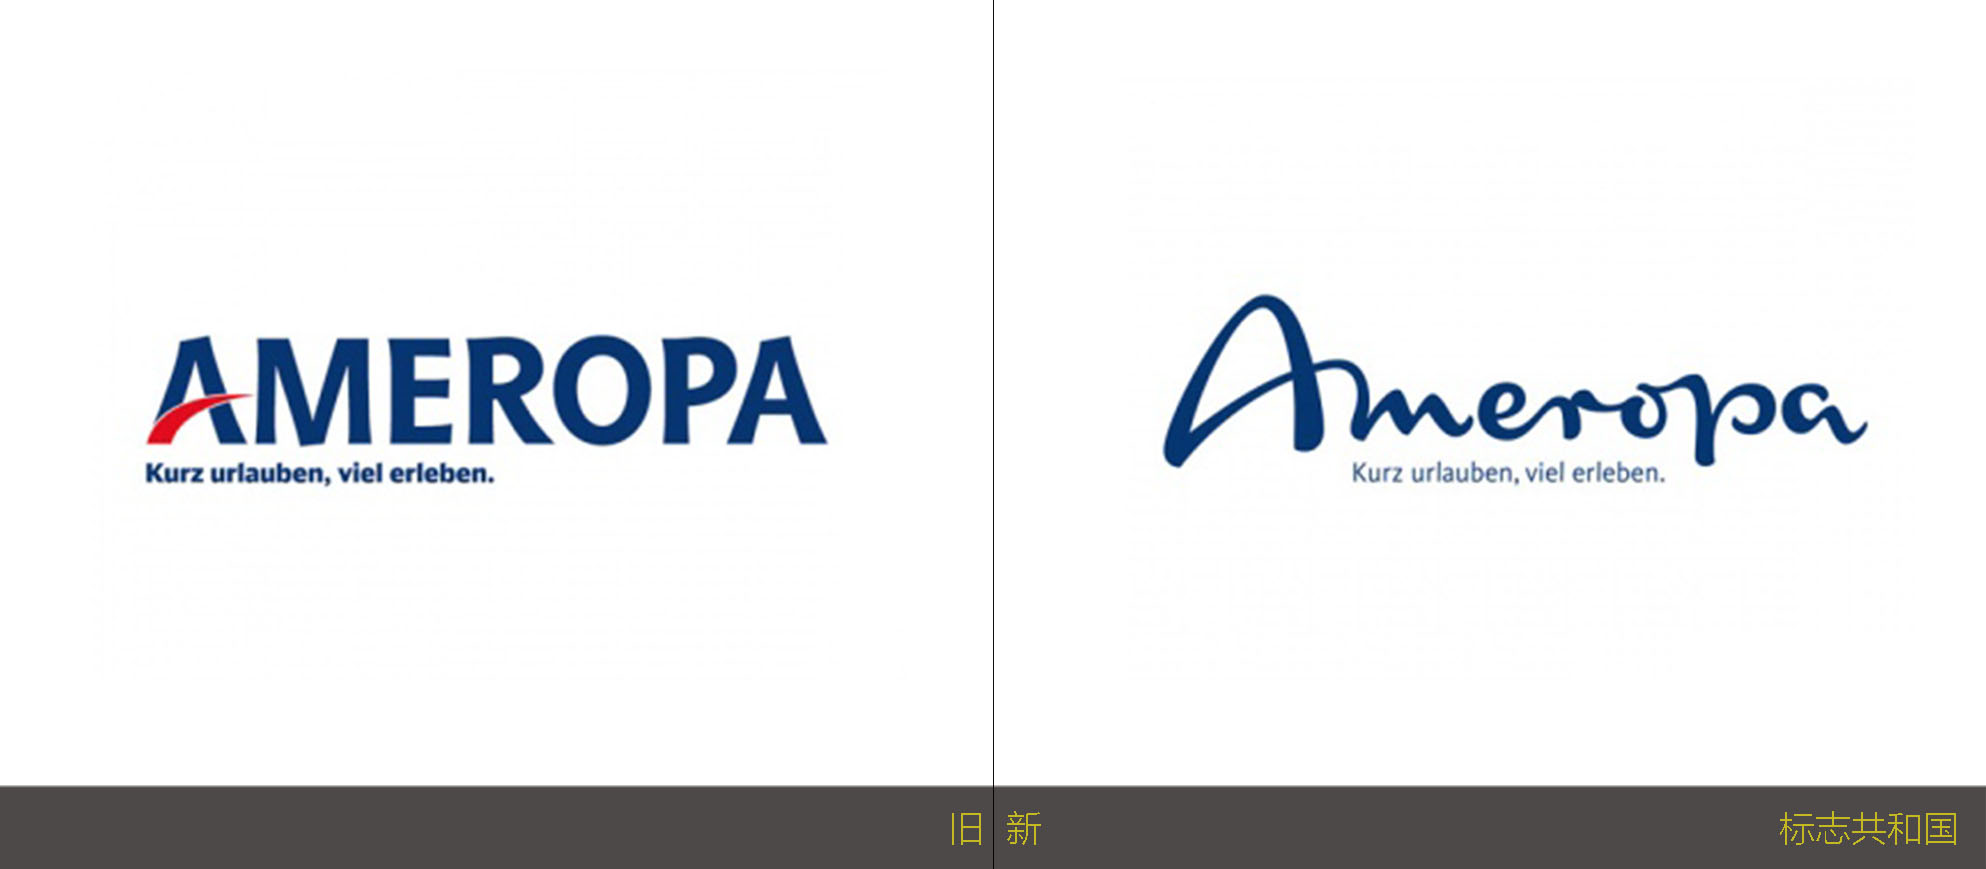 旅游运营商Ameropa全新的品牌标志